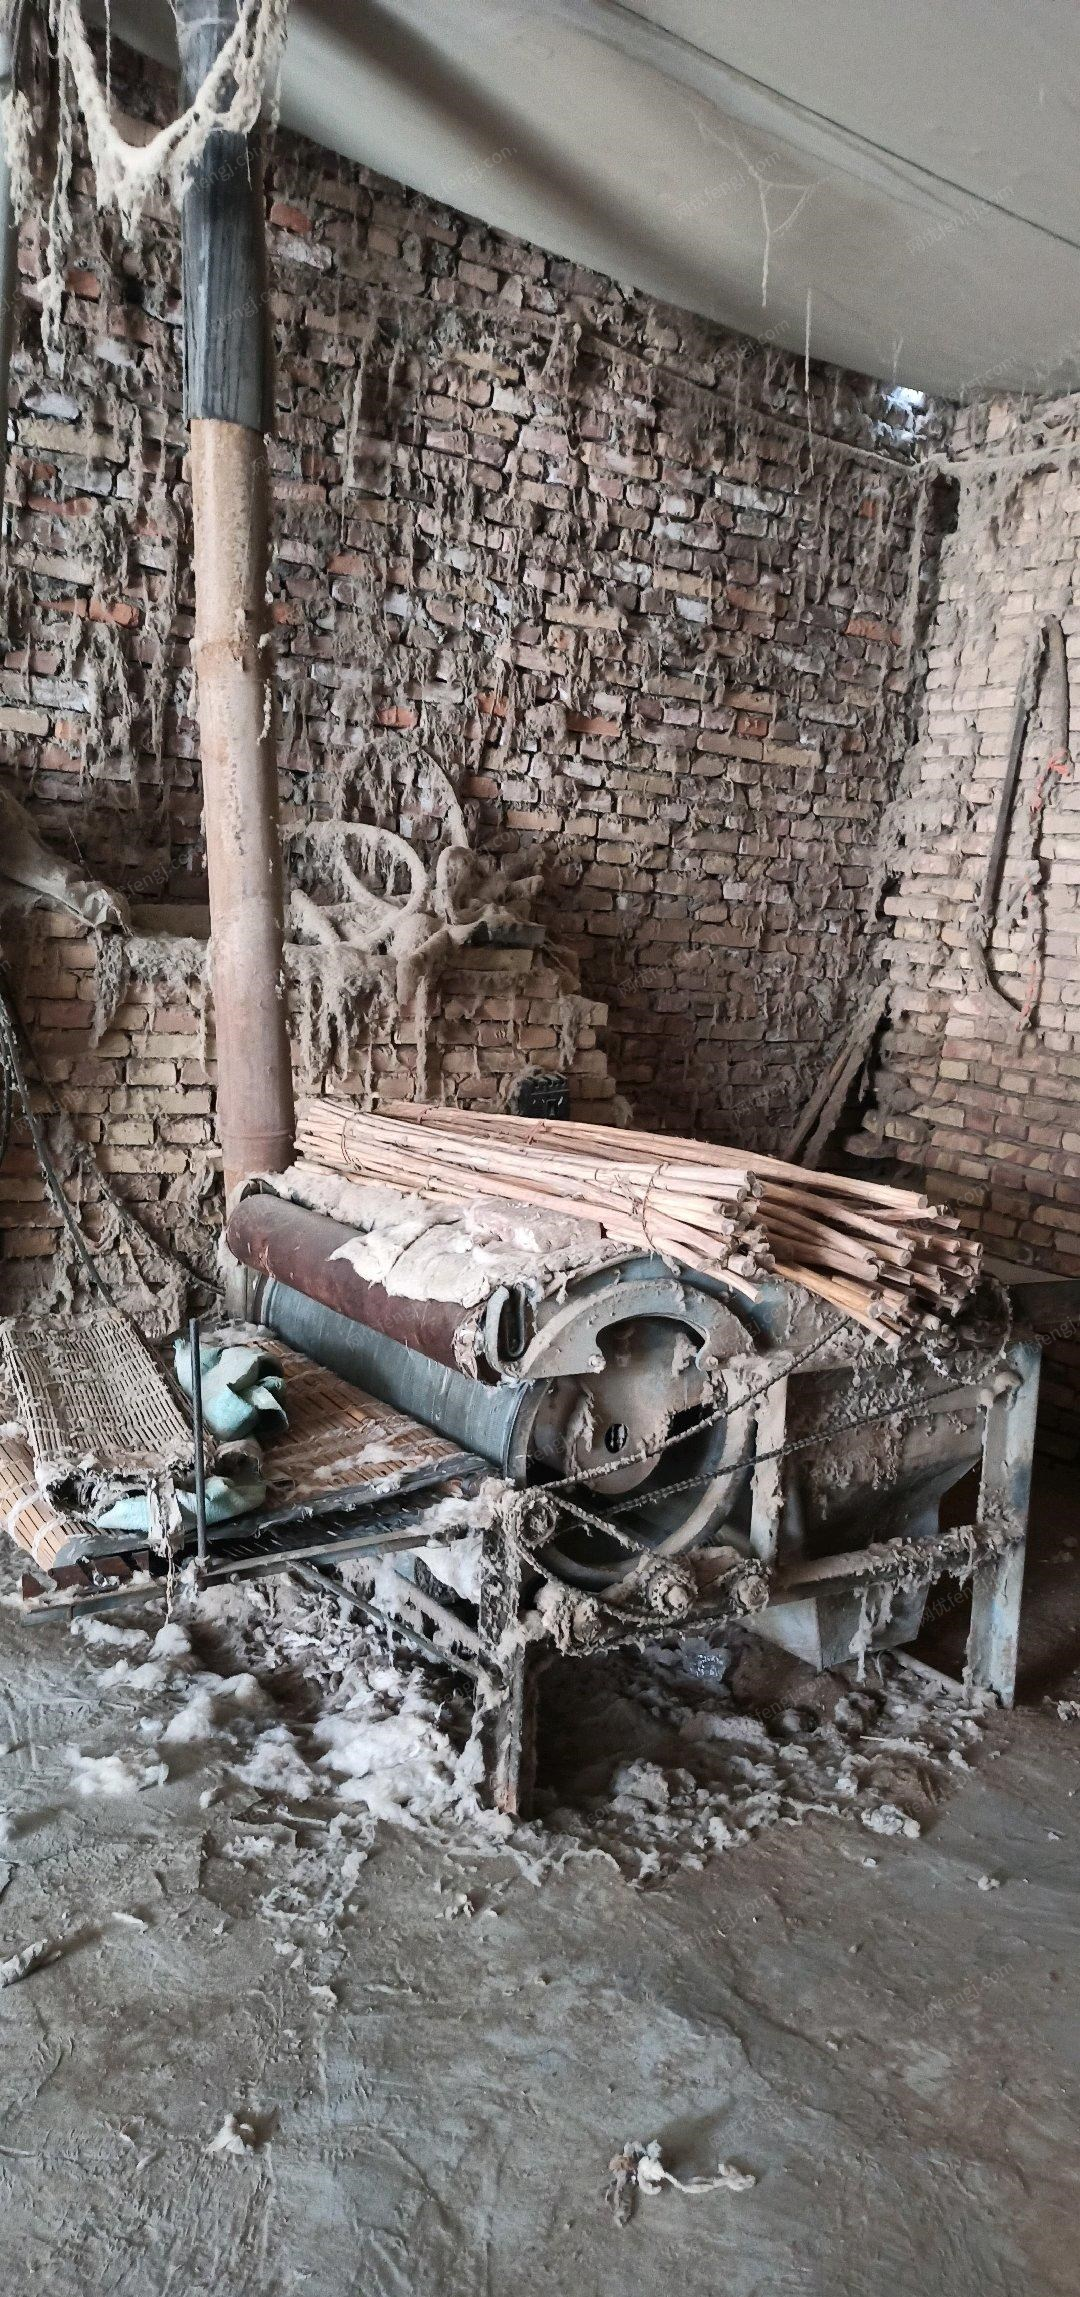 新疆阿克苏年纪不大出售在位网套加工机械一套  梳化机是去年买的,带部分皮棉,看货议价.打包卖.